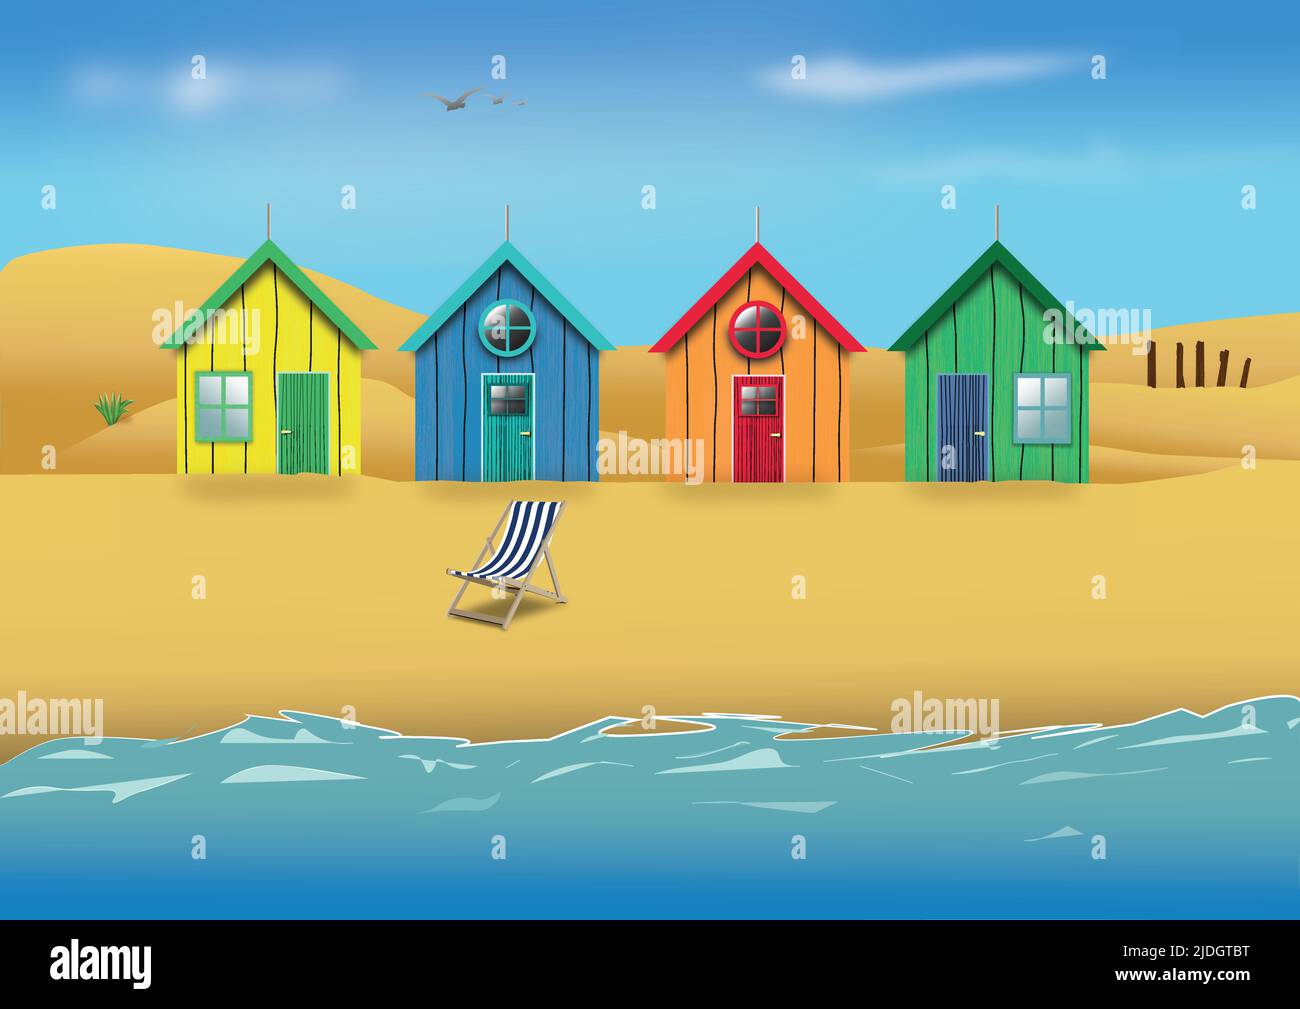 Des cabanes de plage sur une plage de sable avec des dunes de sable en arrière-plan, une chaise longue vide sur la plage en premier plan et des oiseaux qui volent au-dessus de la tête Illustration de Vecteur